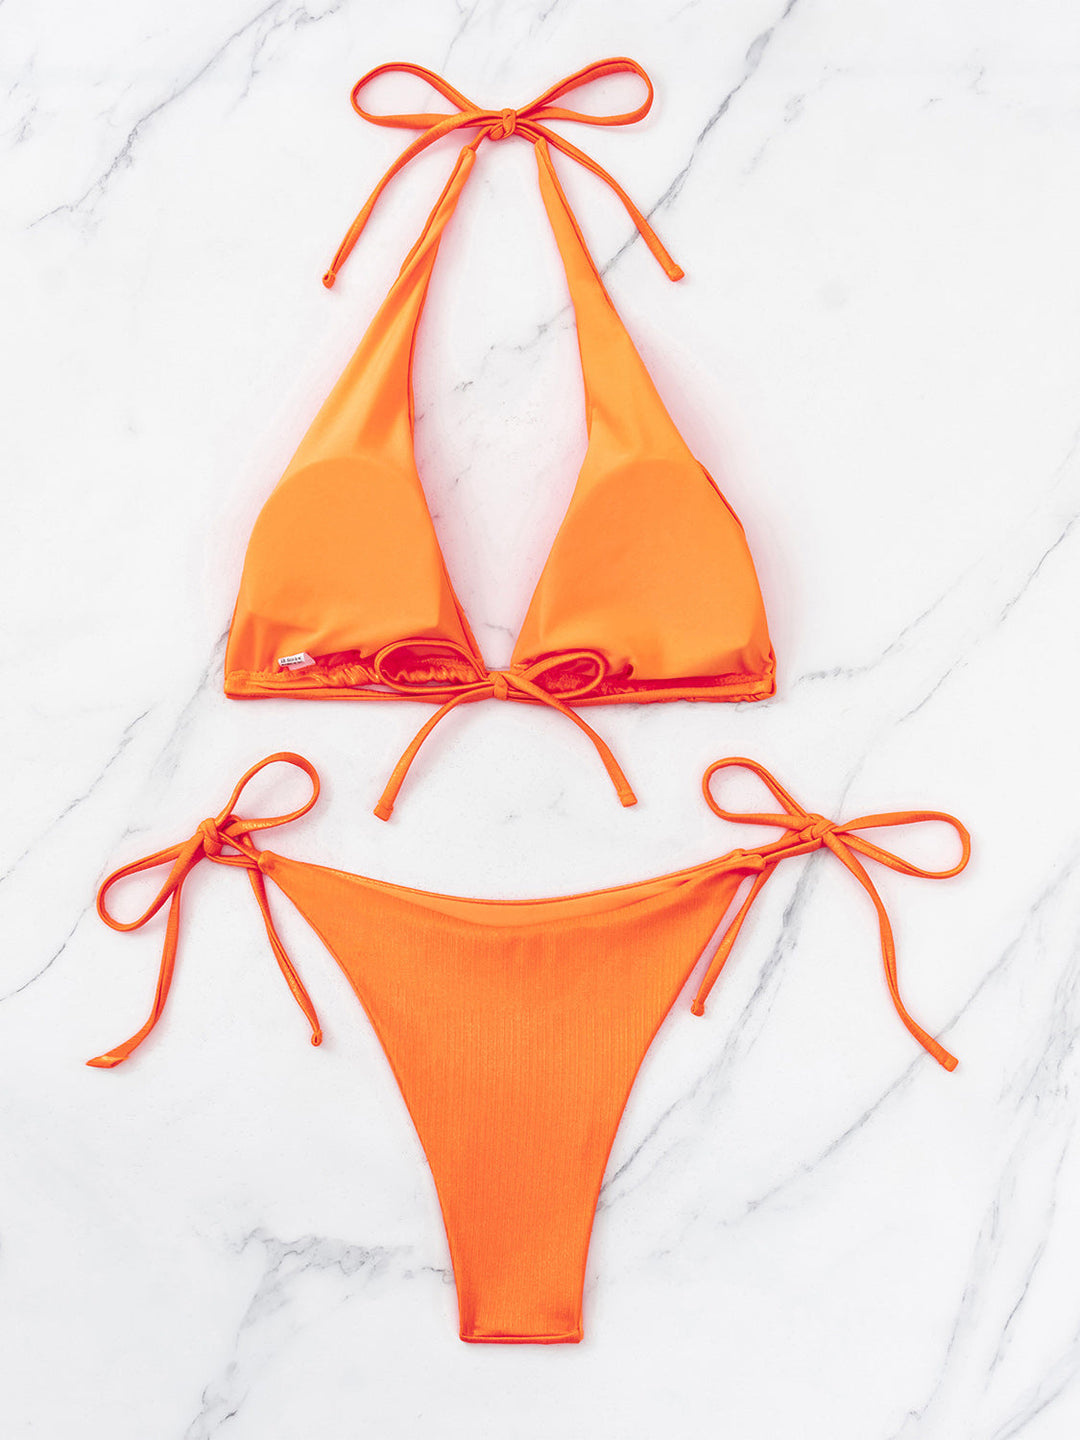 Tied Halter Neck Two-Piece Bikini Set by Coco Charli